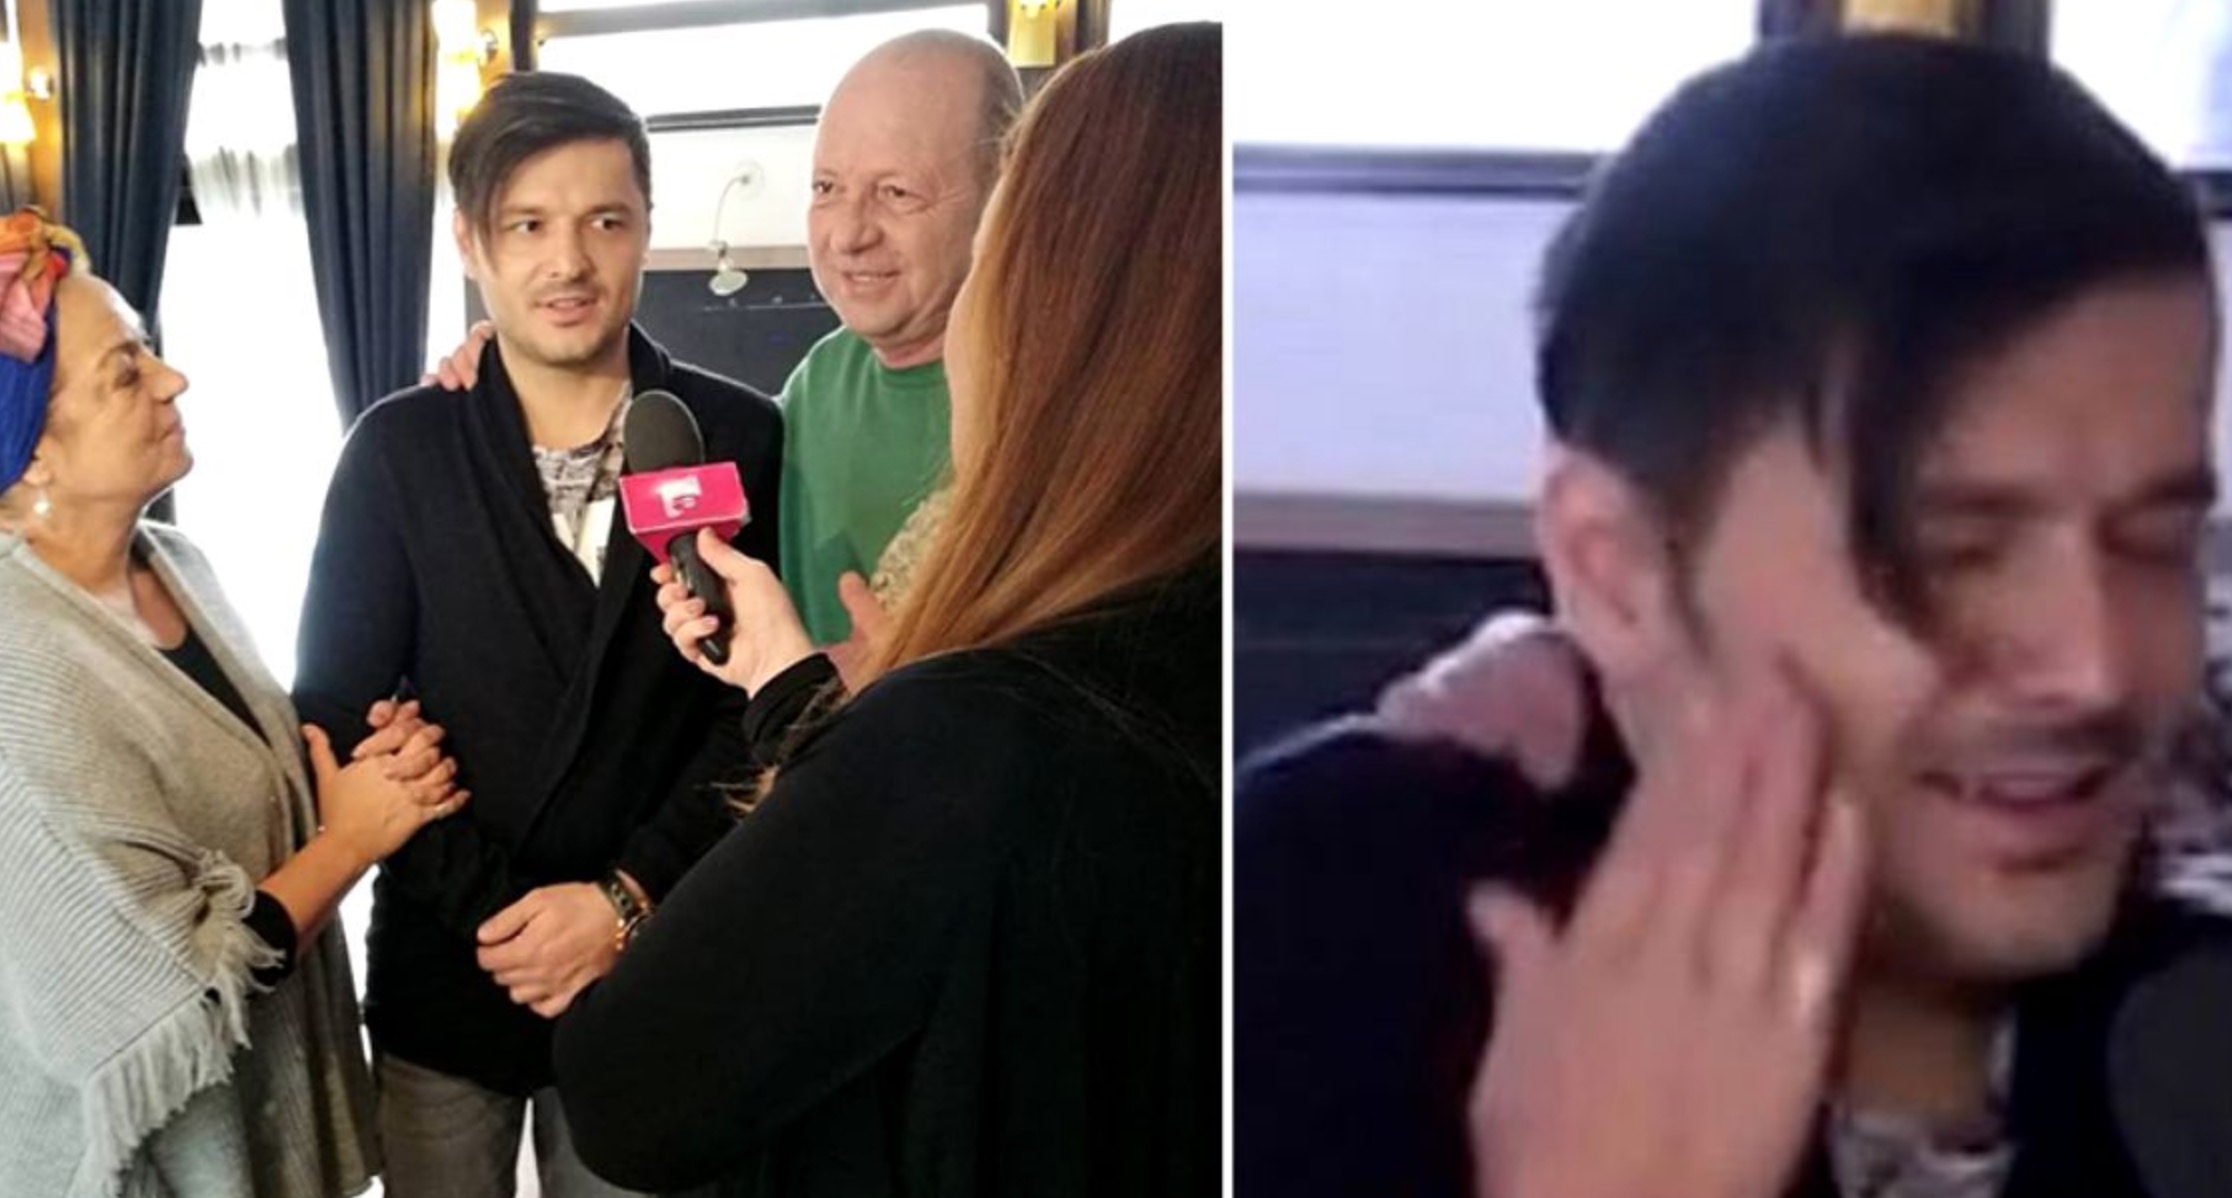 Liviu Vârciu luat la palme! Imaginile scandaloase au fost date chiar la Antena 1